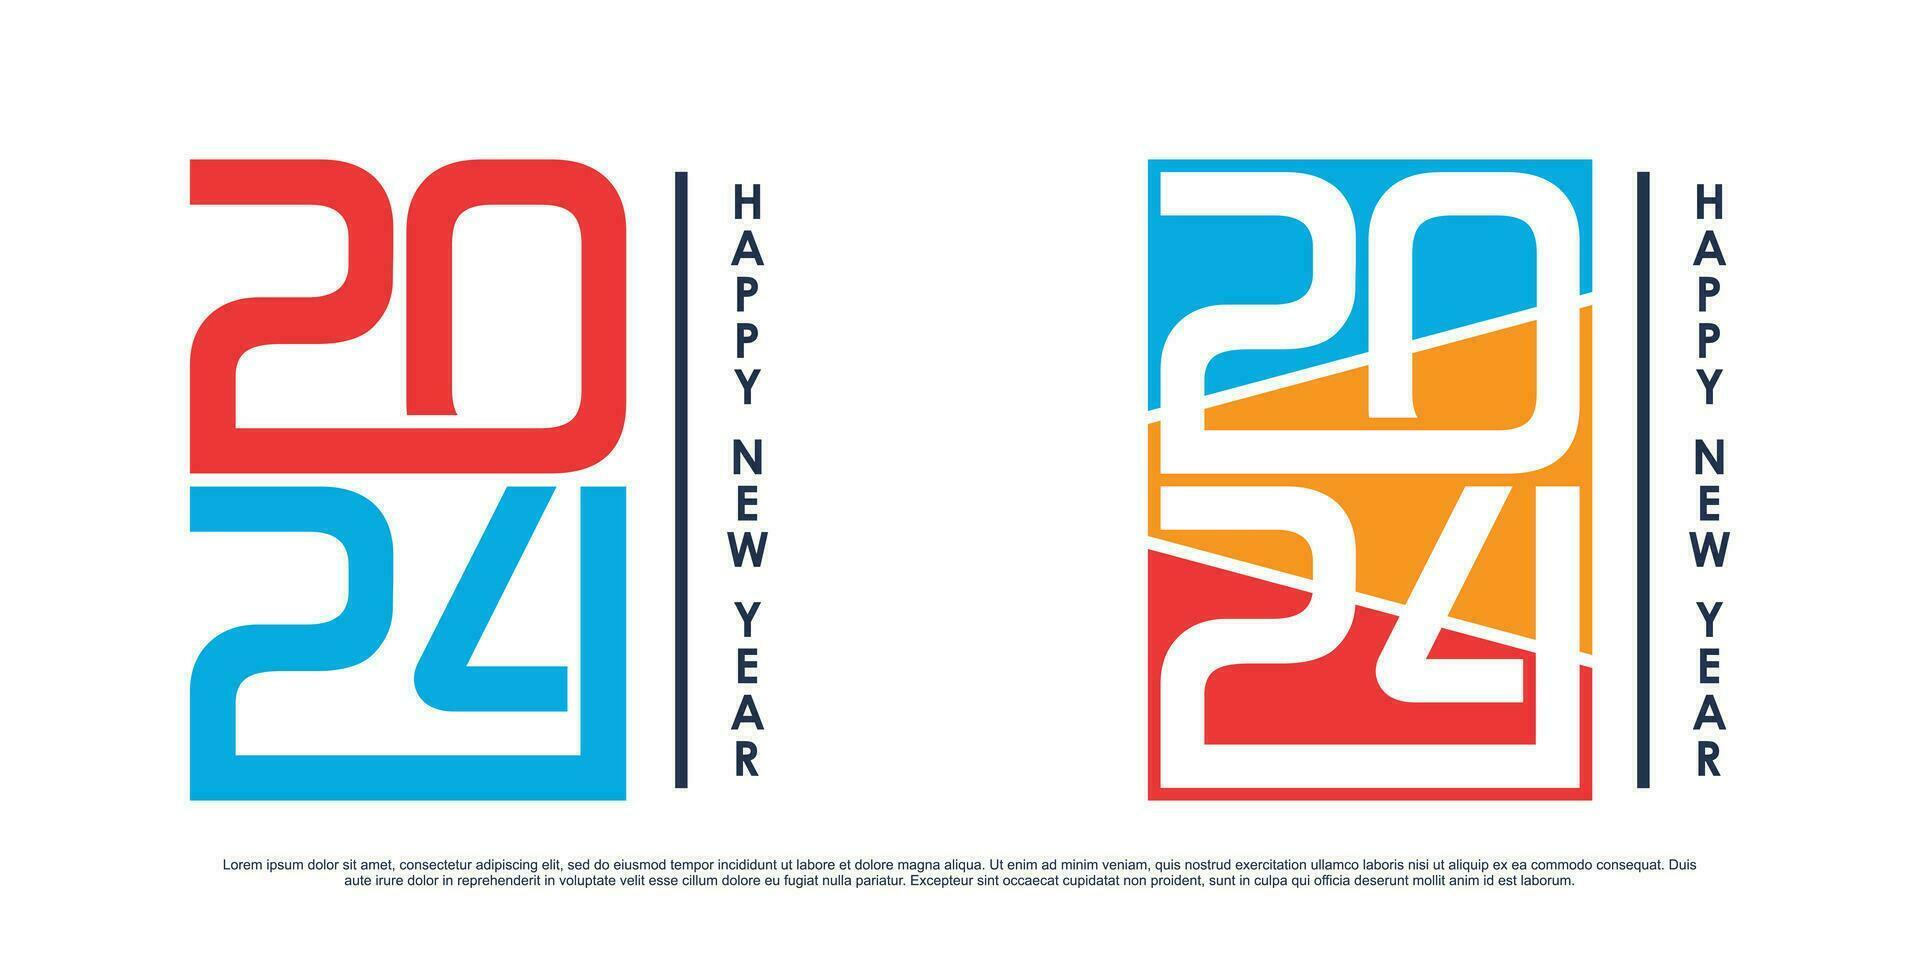 2024 contento nuovo anno logo vettore design con moderno idea